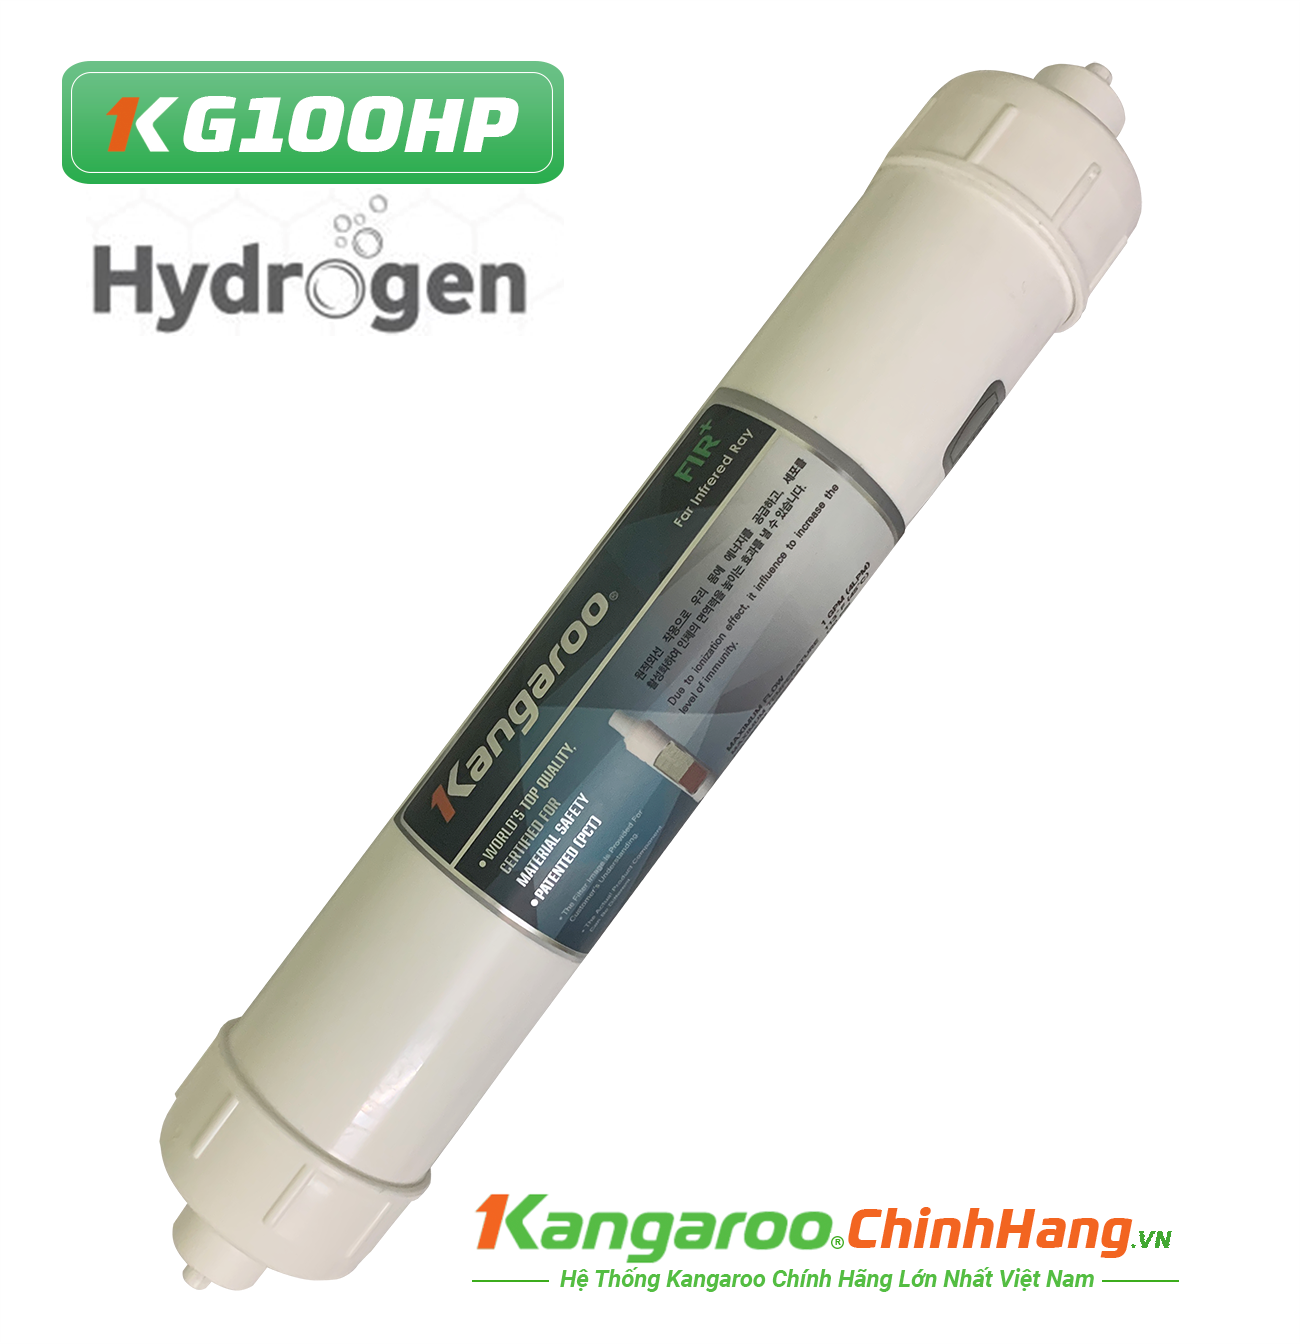 Lõi lọc nước Kangaroo Hydrogen số 5 FIR + (HP)